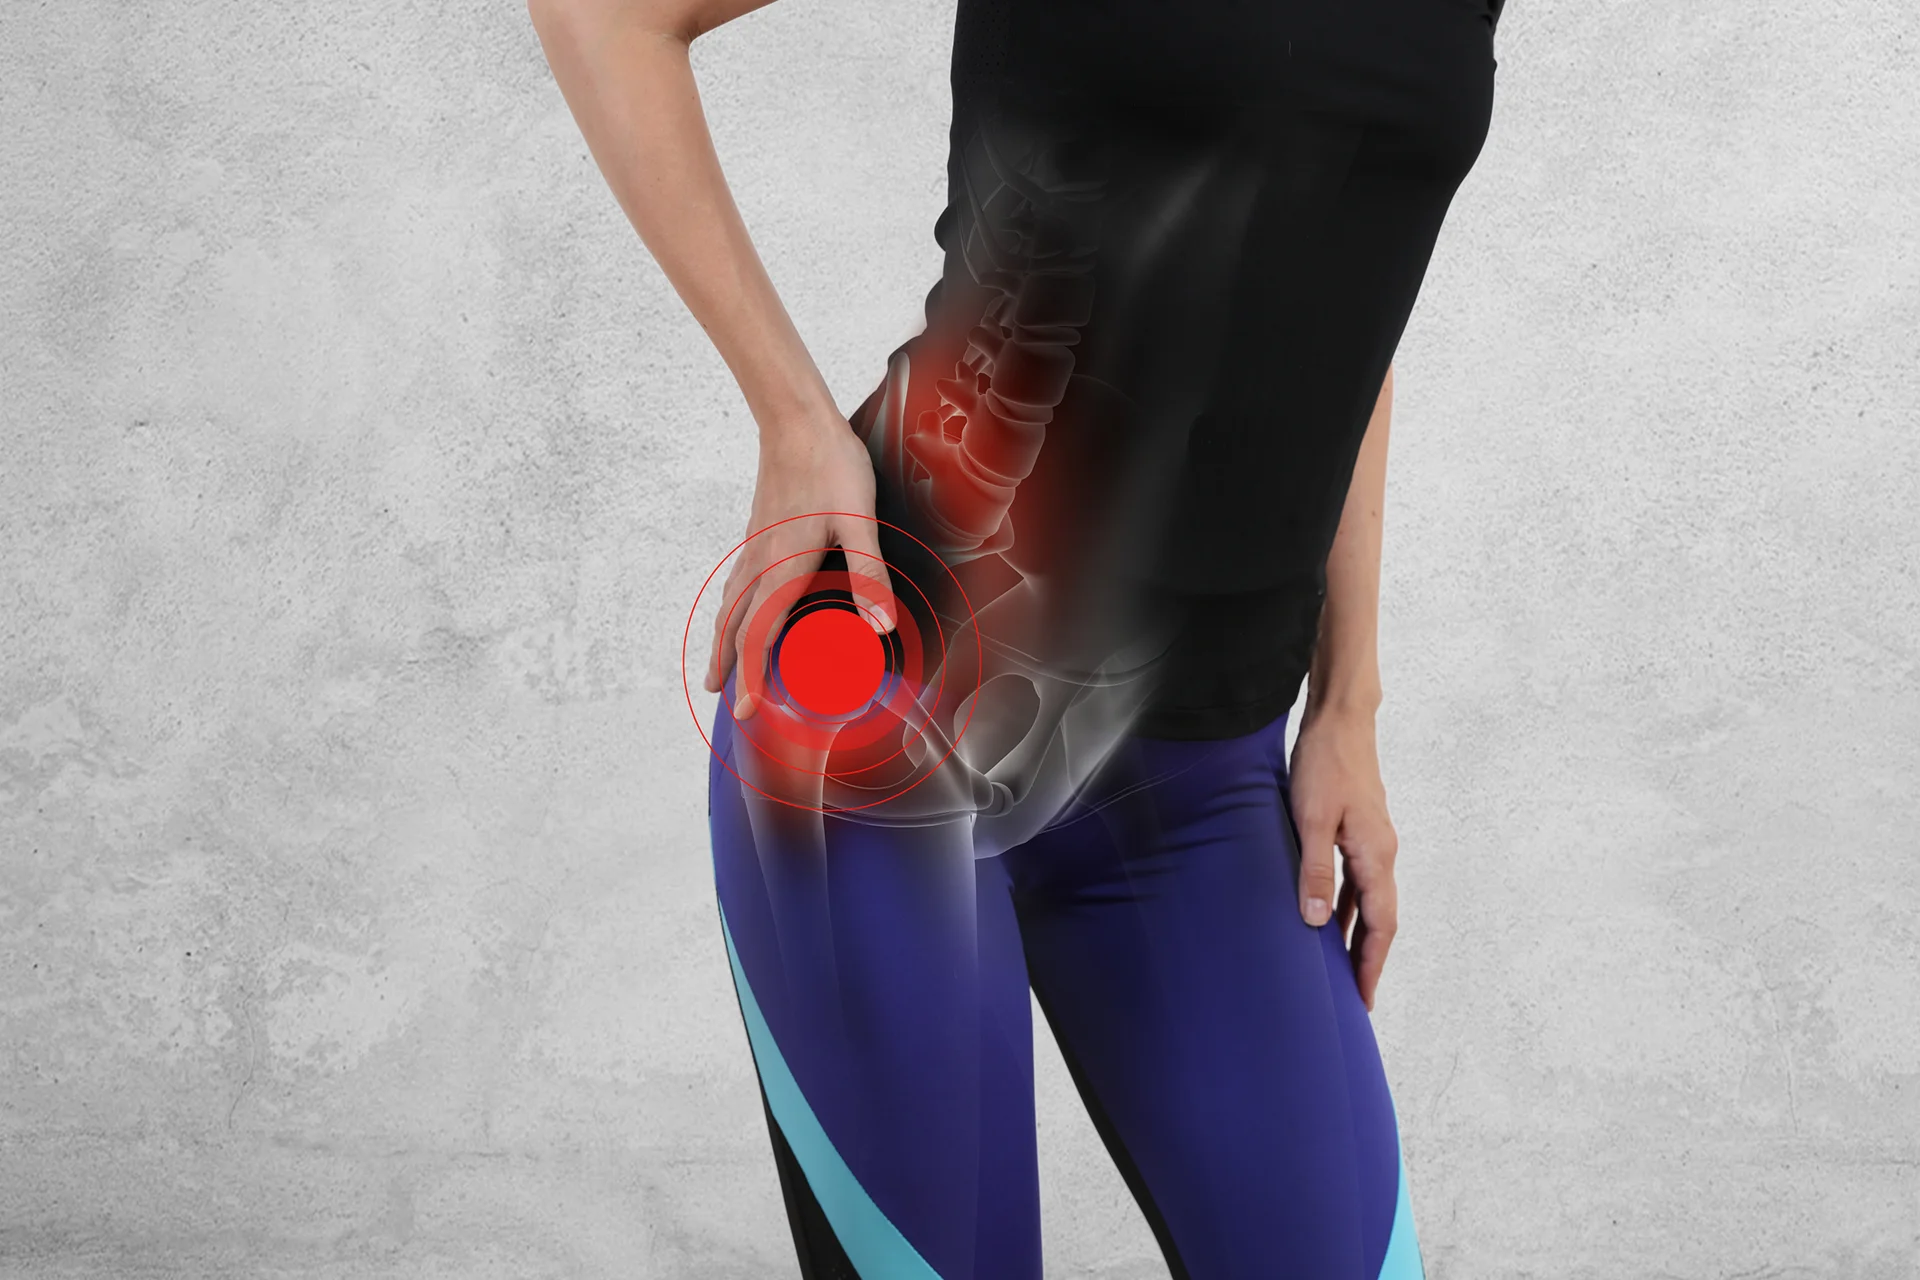 hip misalignment causes sciatica pain